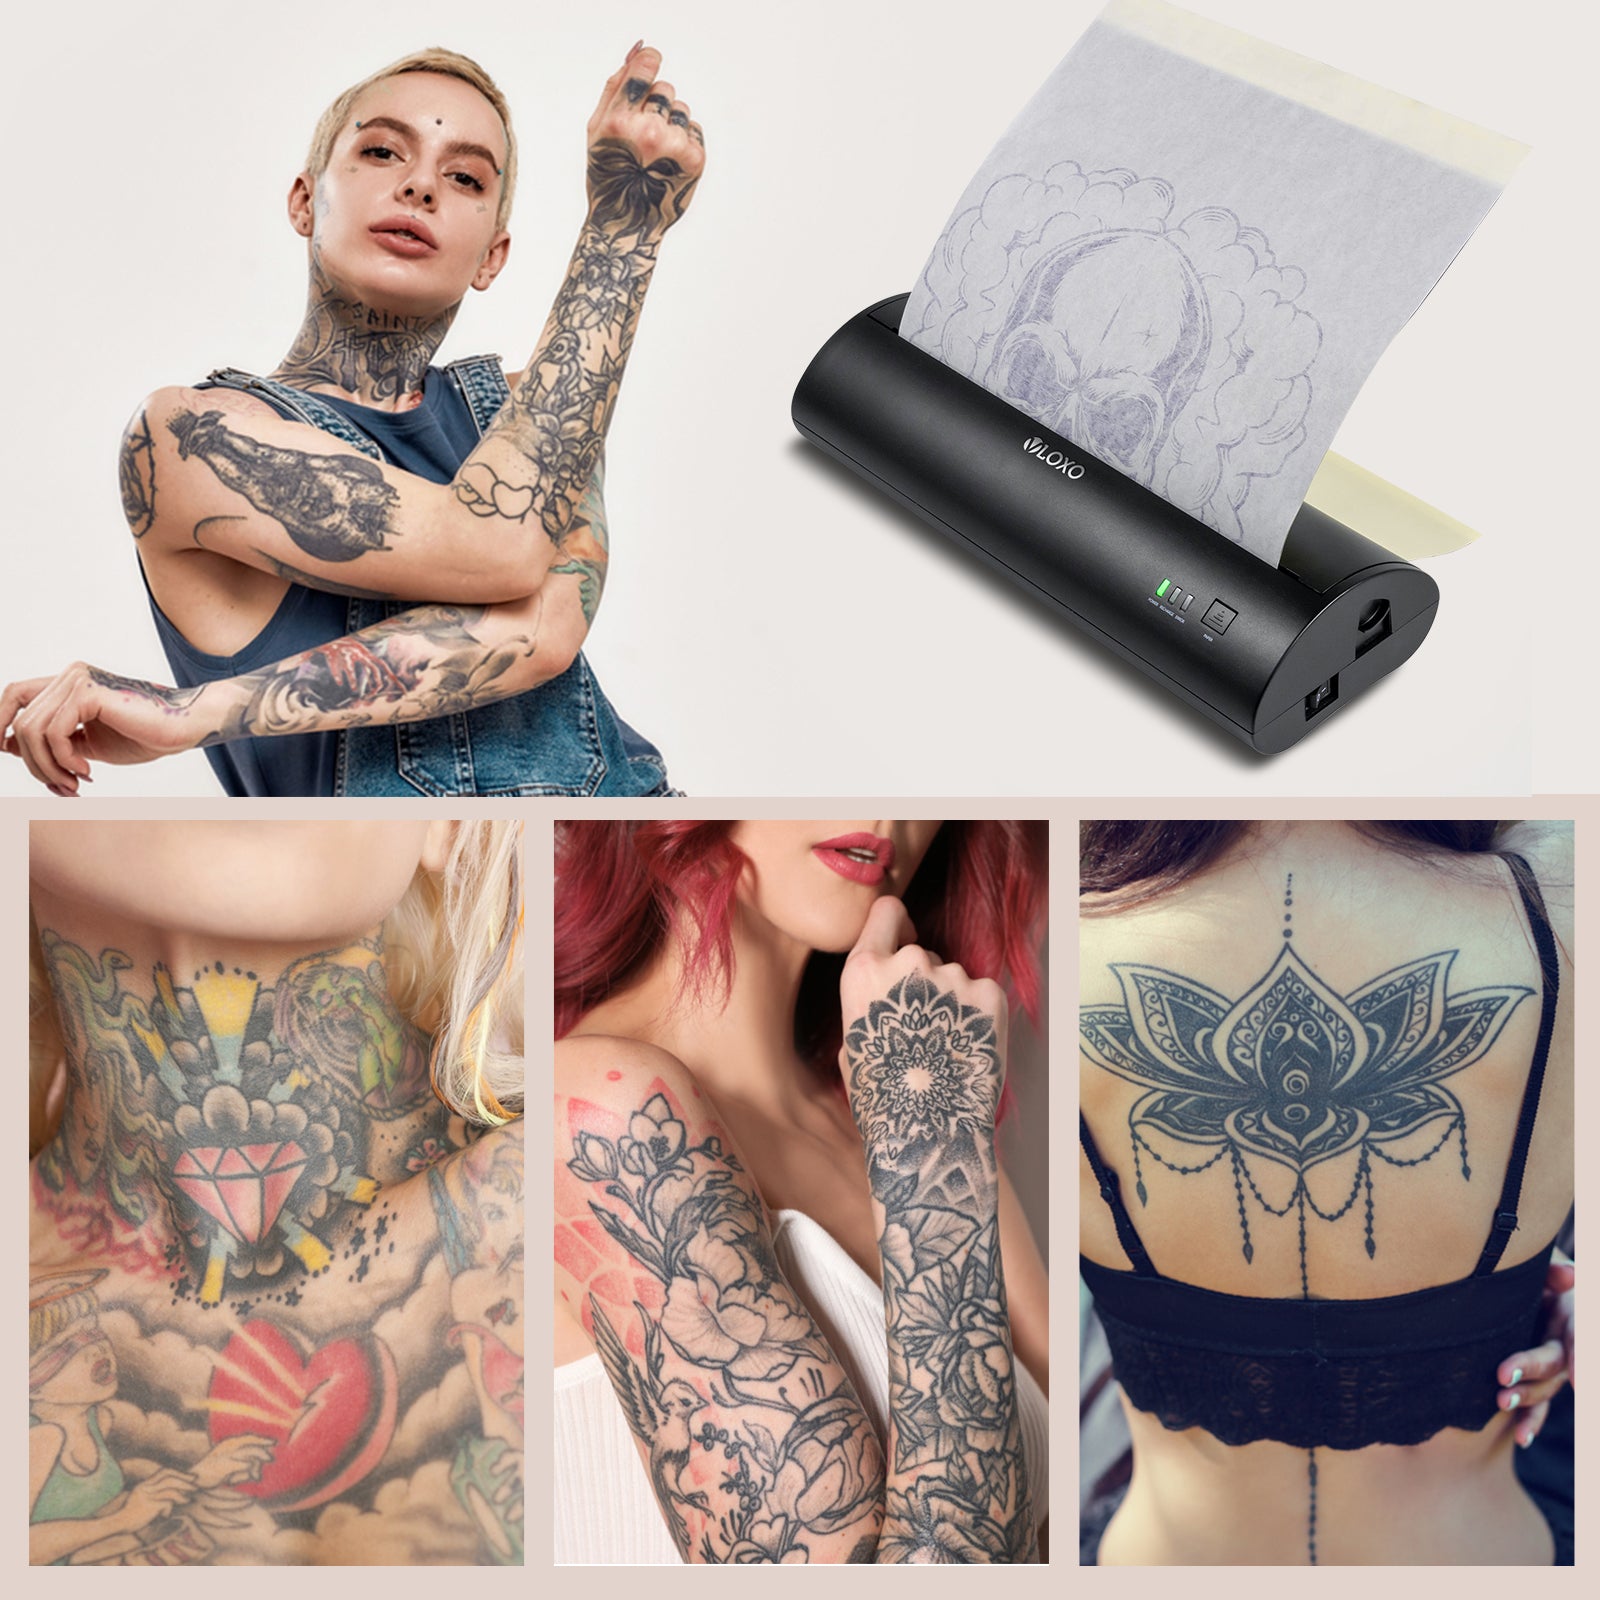 OZER QUICK WIRELESS STENCIL PRINTER – Pulse Tattoo